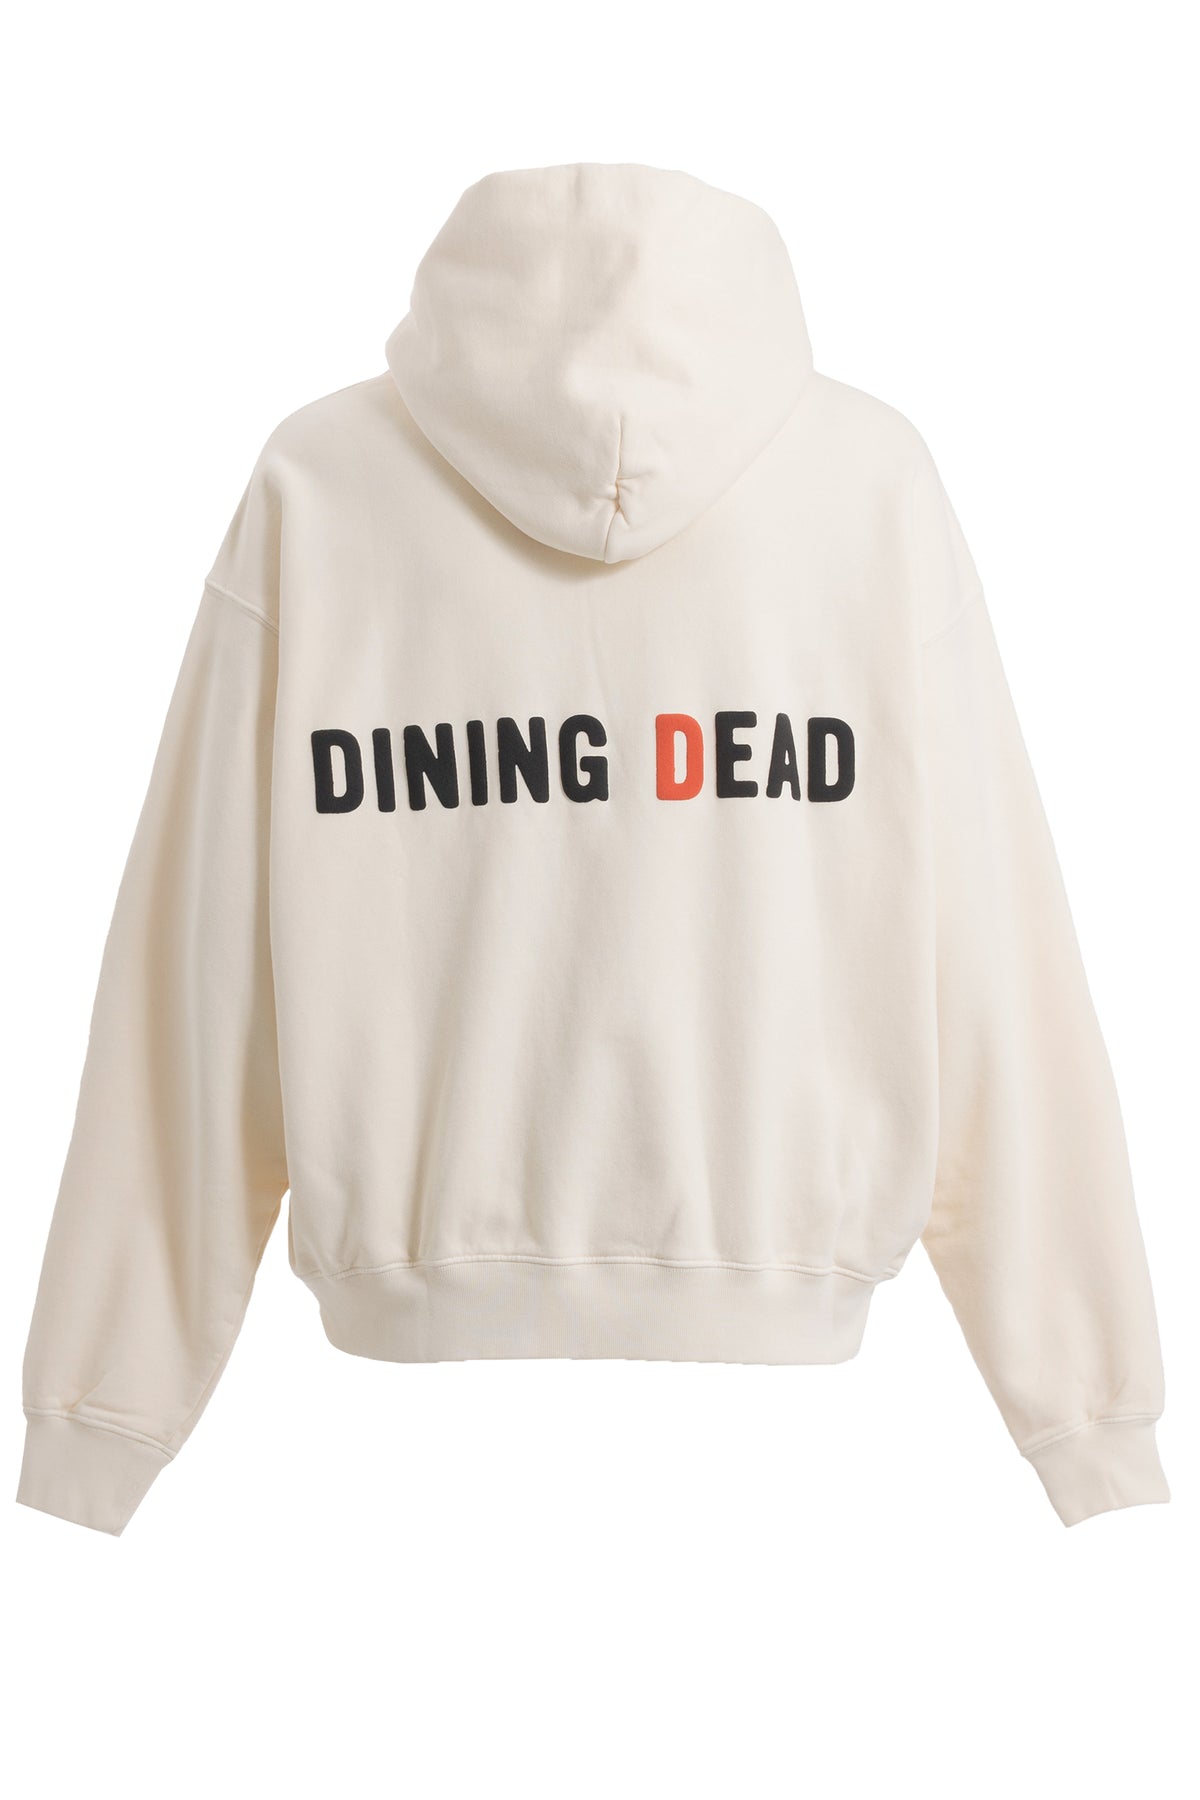 DINING DEAD HOODIE / CRM